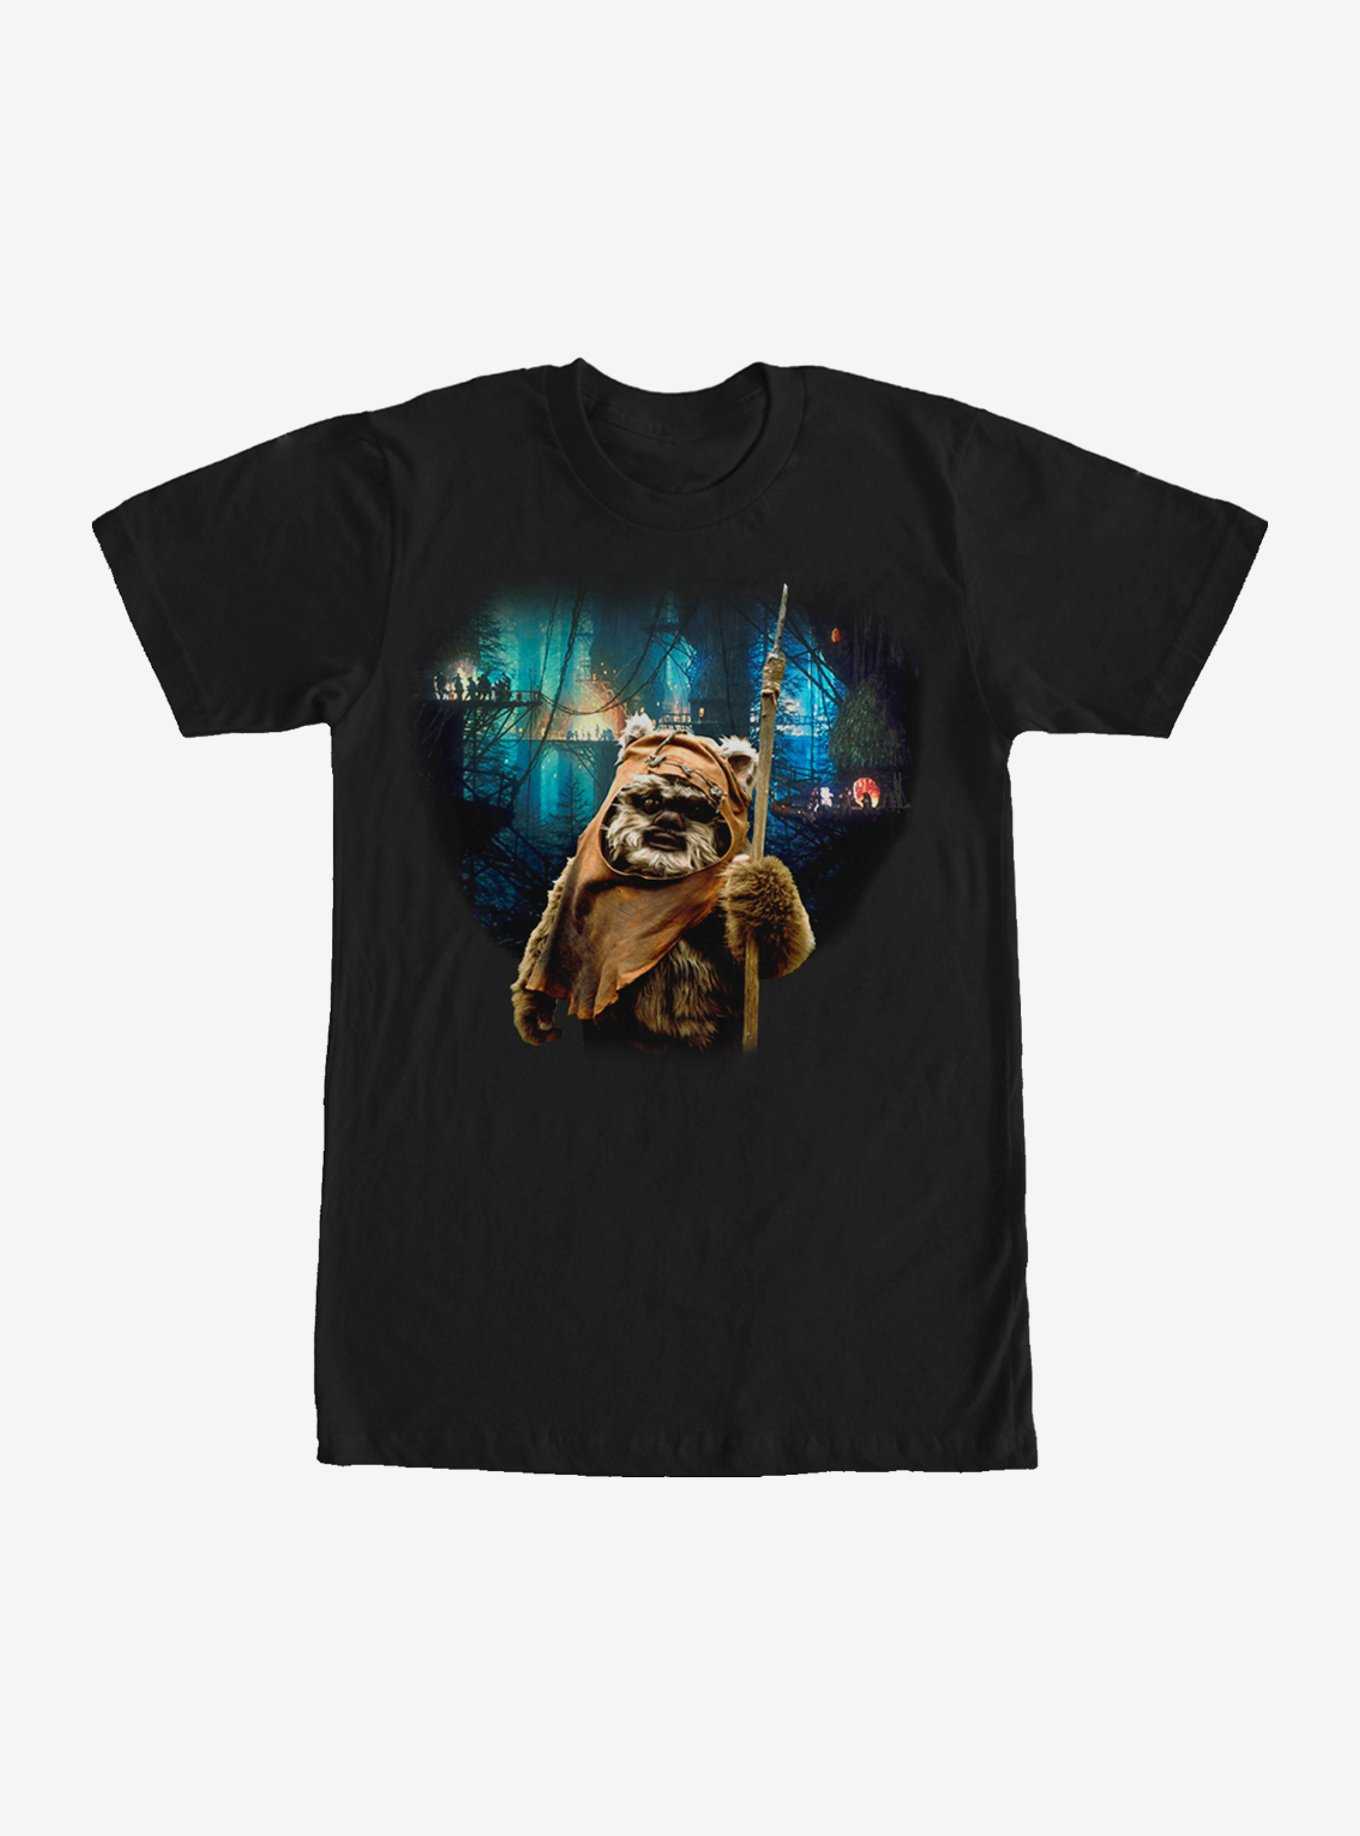 Star Wars Tree Village Wicket Ewok T-Shirt, , hi-res